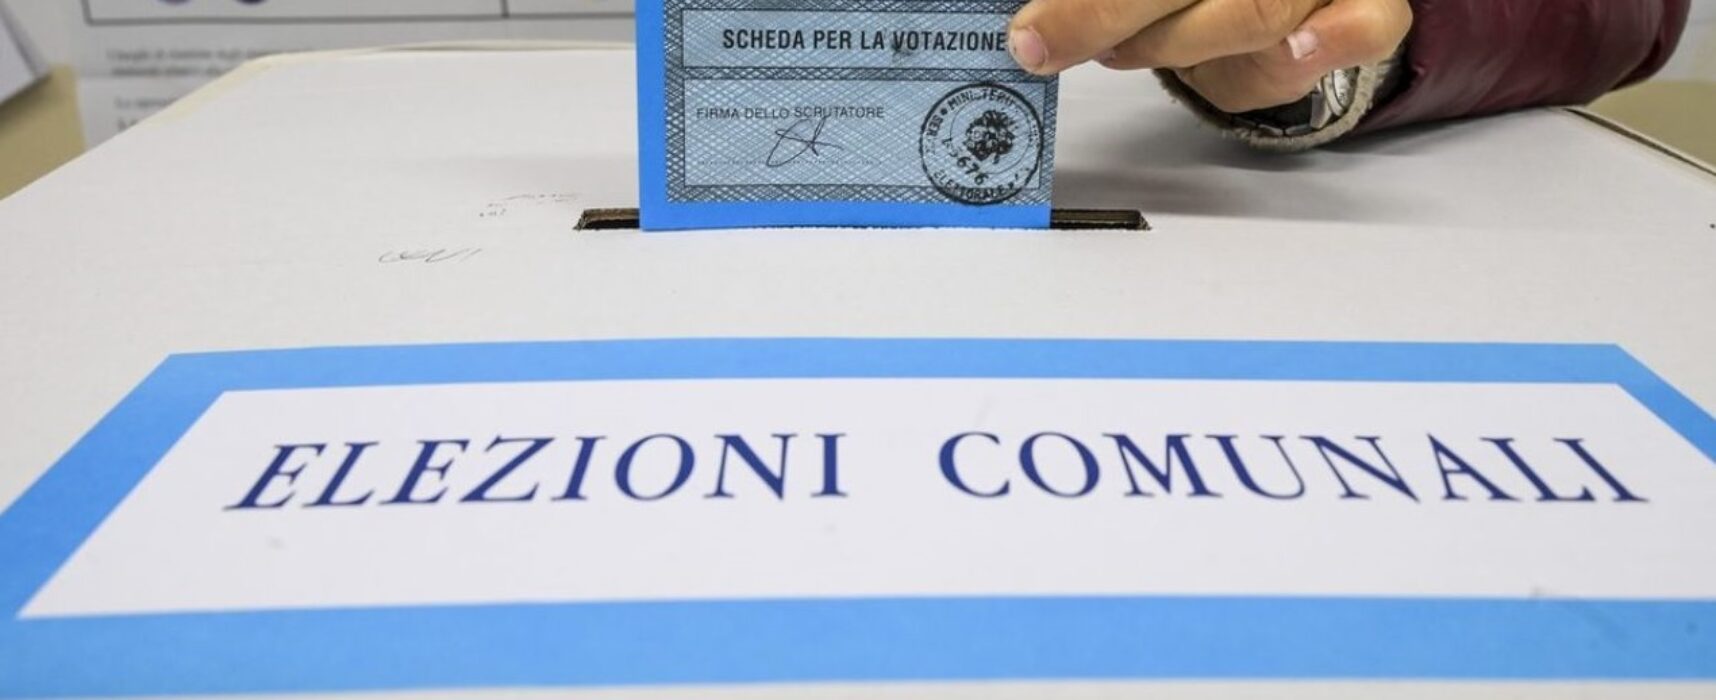 Tar Puglia respinge ricorso elettorale, confermata legittimità elezioni comunali 2023